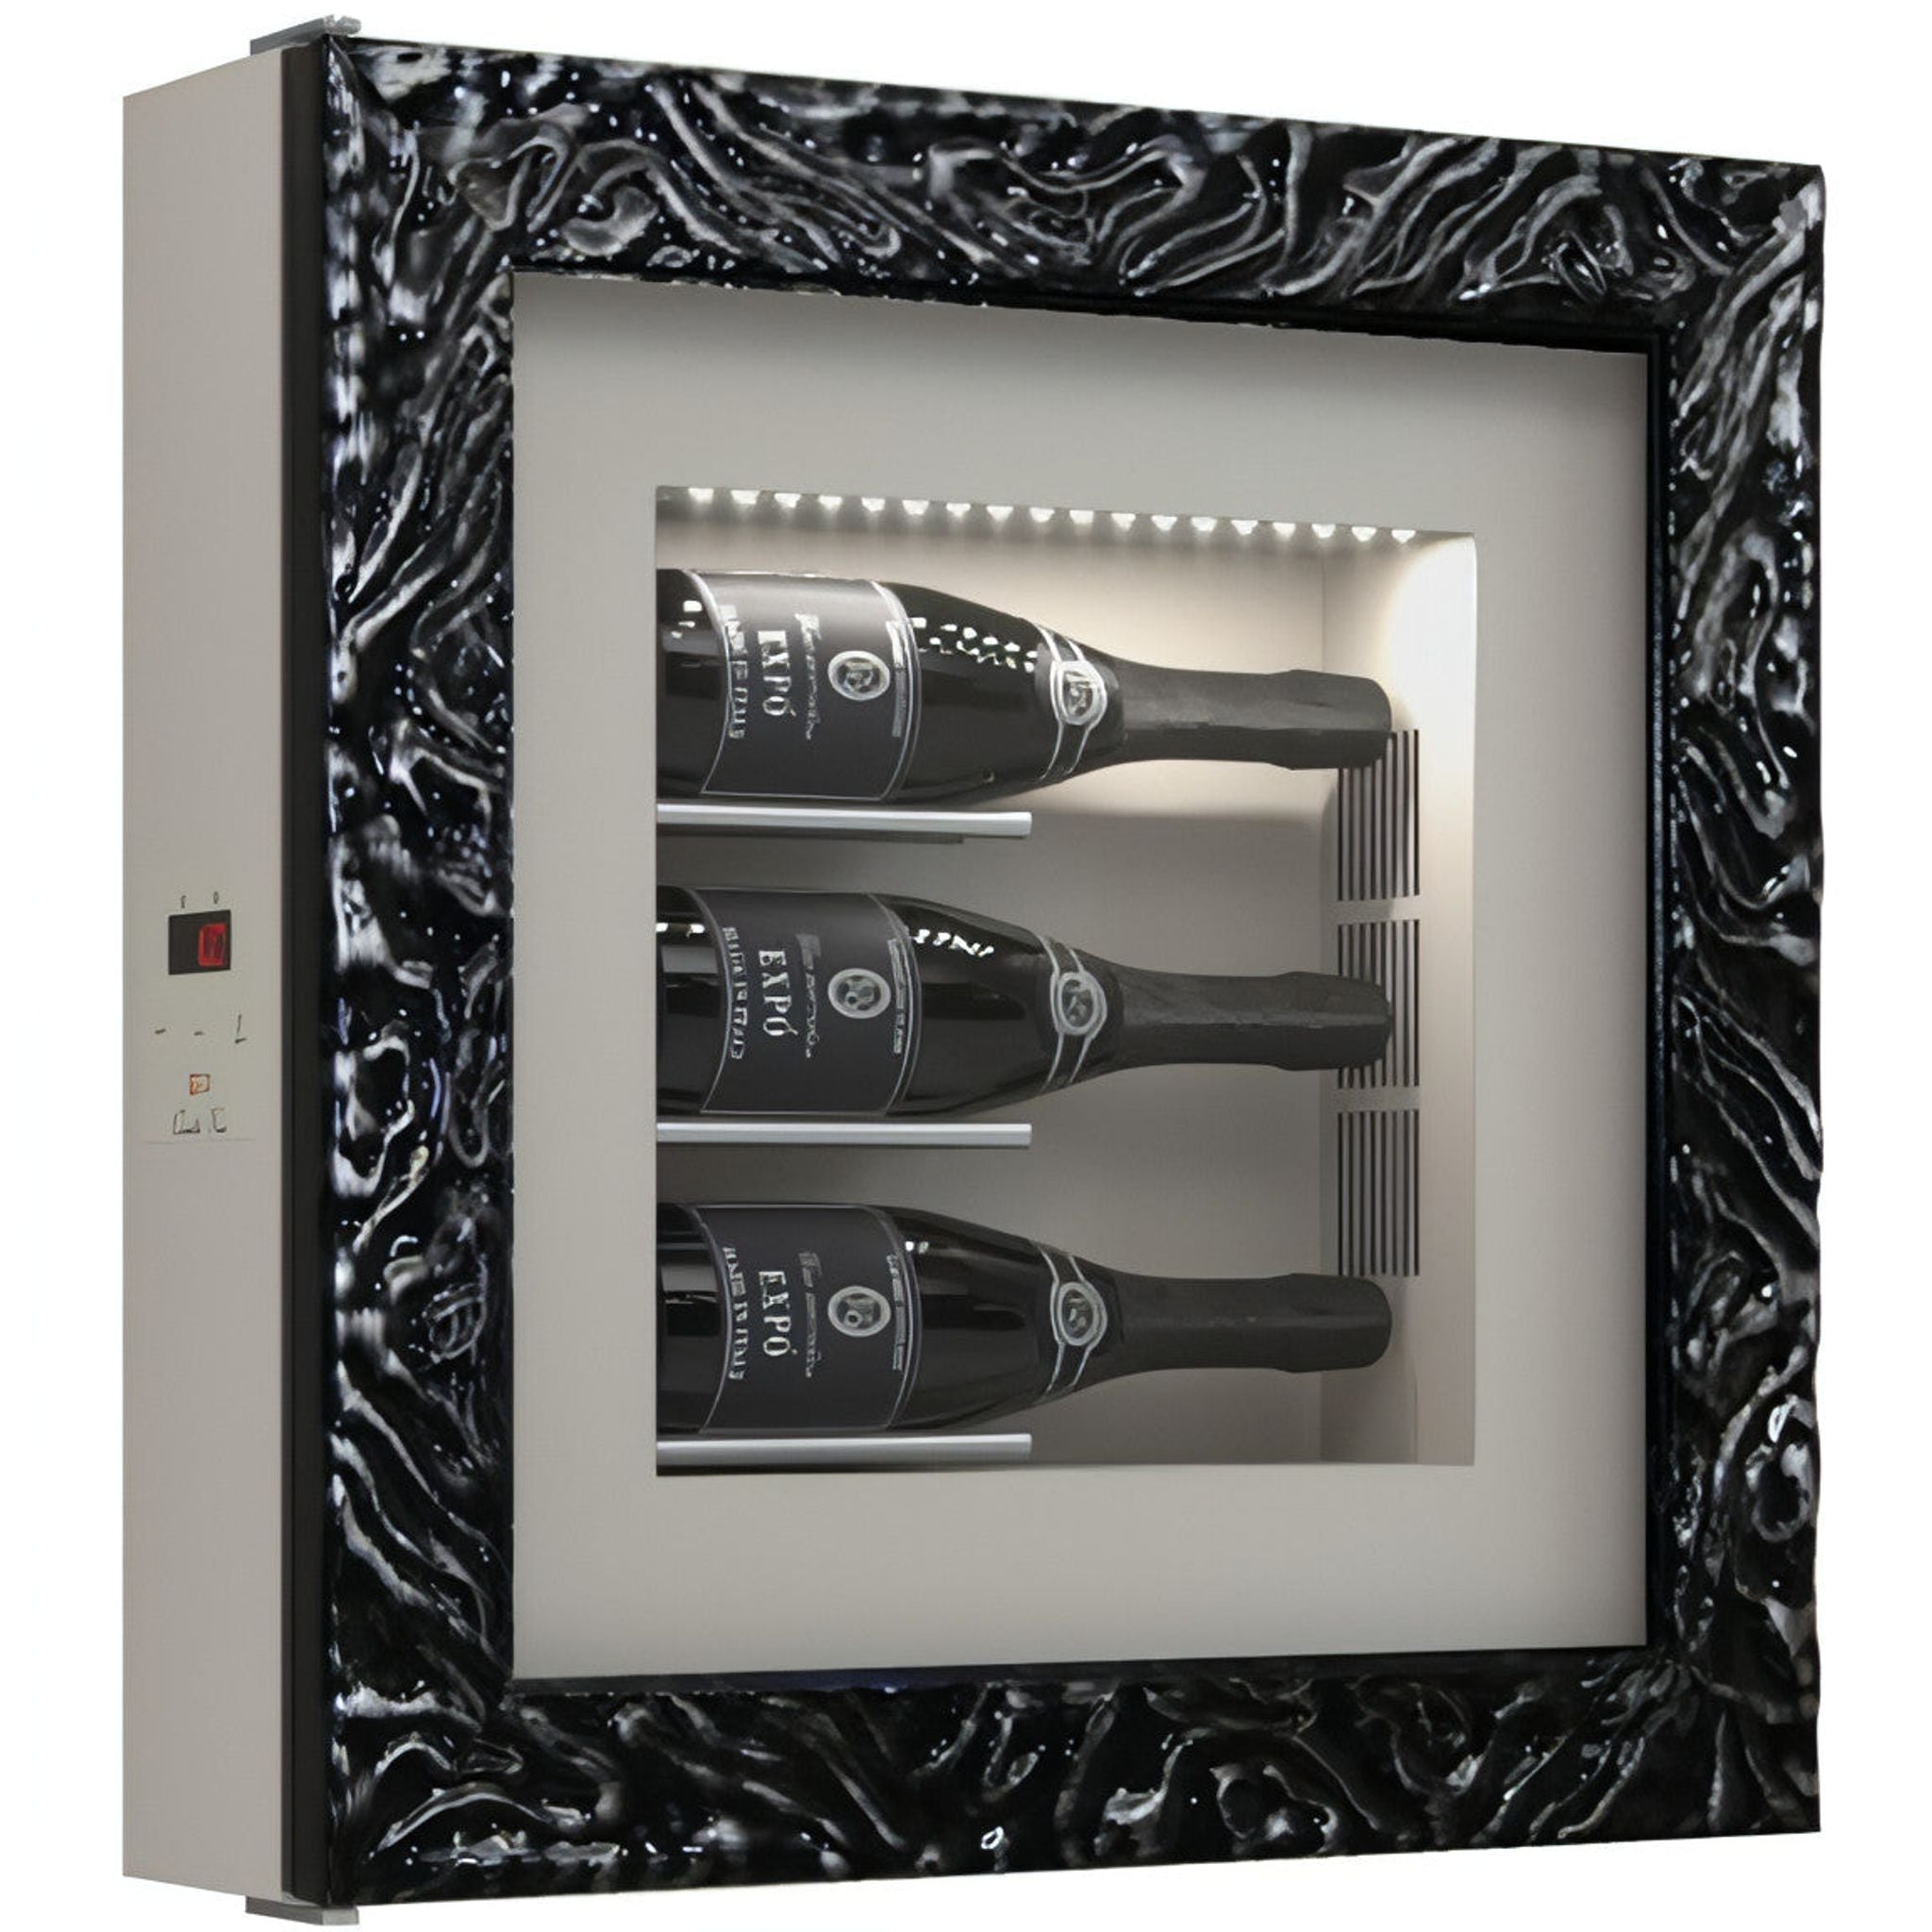 Quadro Vino - Wine Wall QV30 - 3 Bottle Display Unit